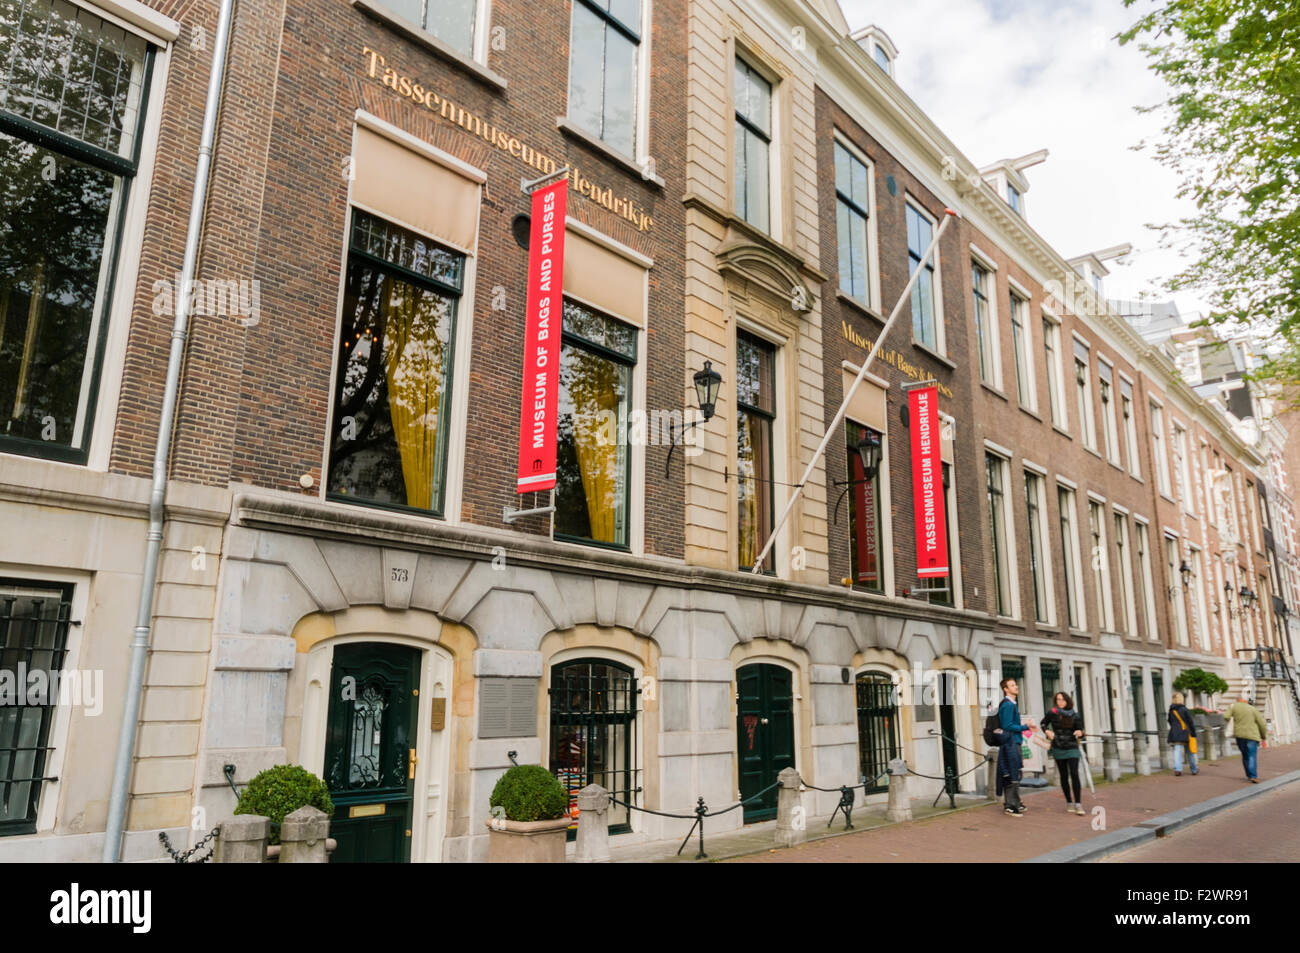 Tassenmuseum Hendrikje, museo di sacchetti e borse, Amsterdam Foto Stock